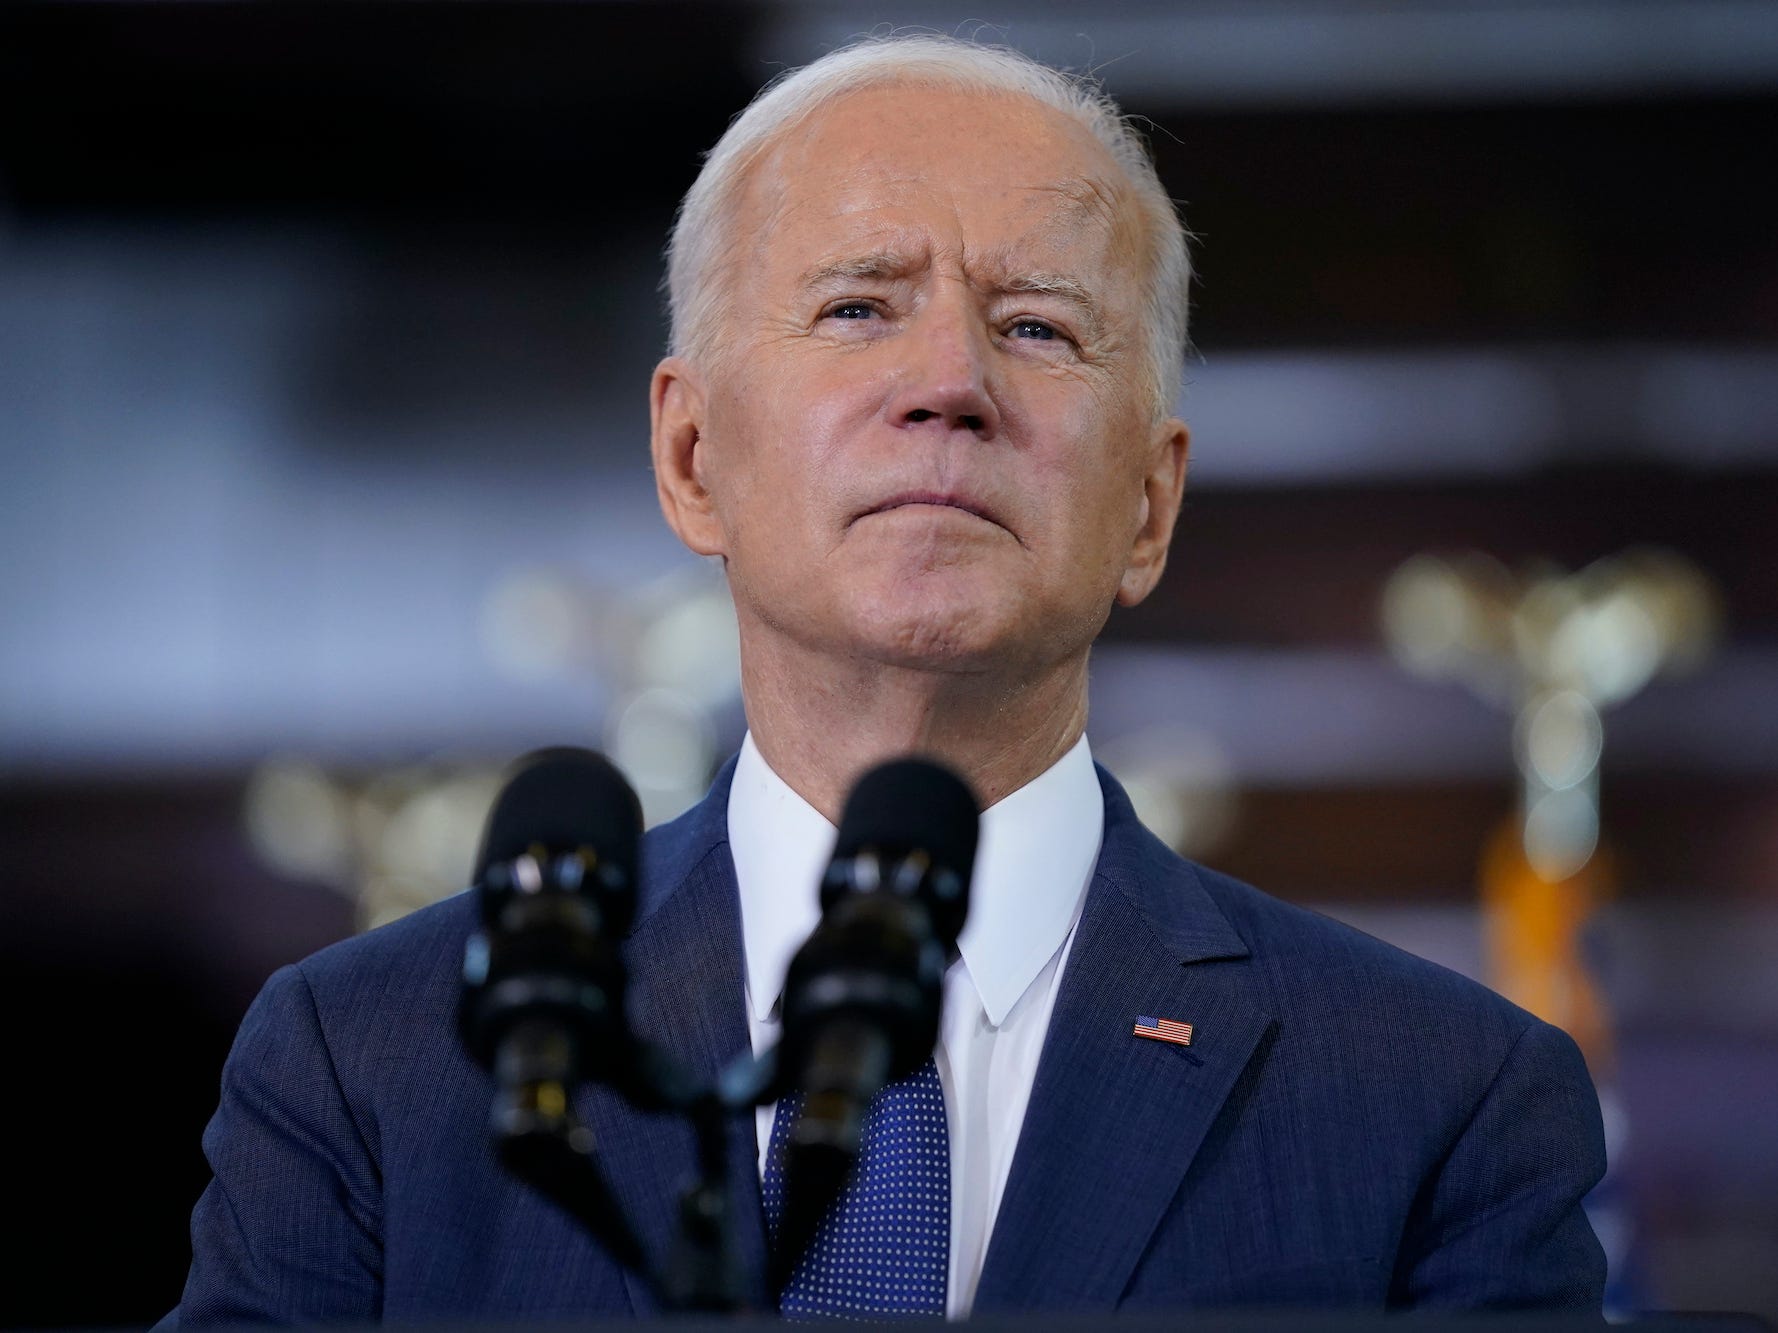 President Joe Biden stands at a microphone